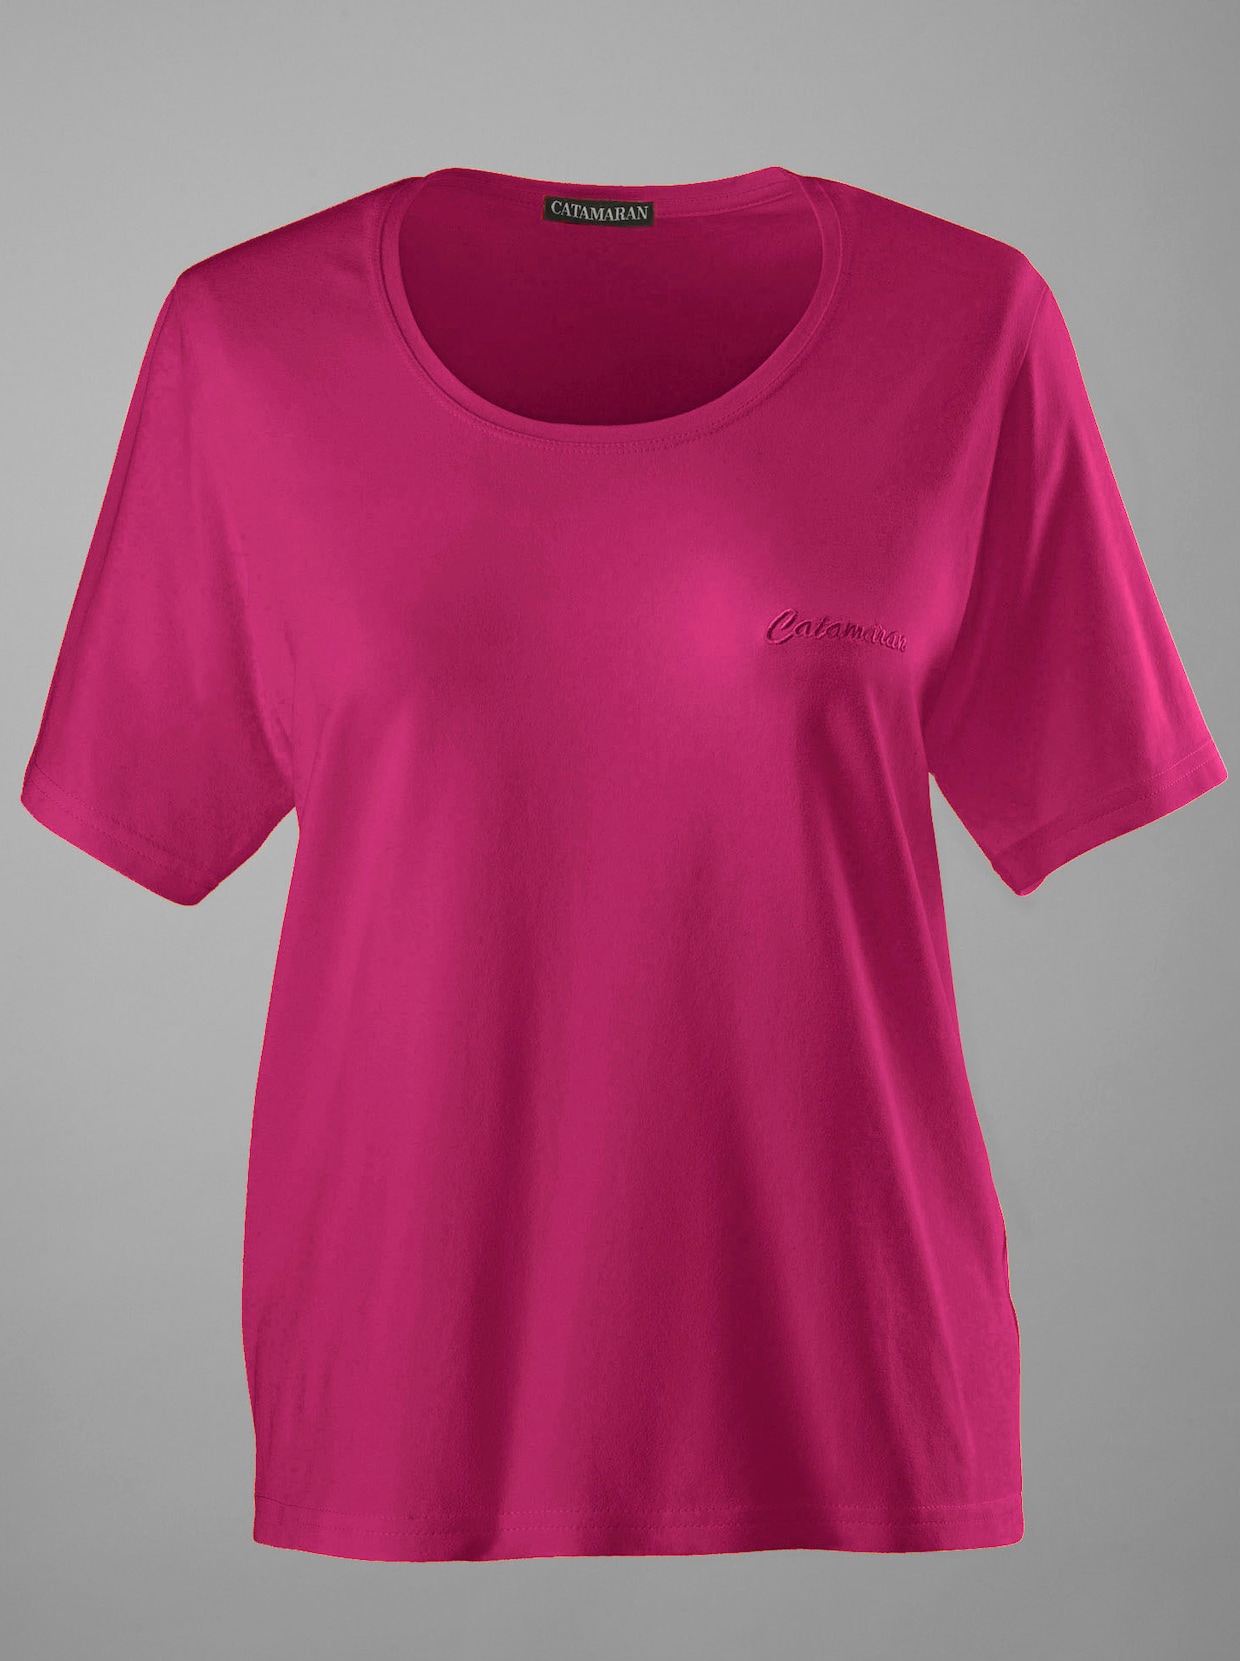 Catamaran Sports Sportshirt - schwarz + pink